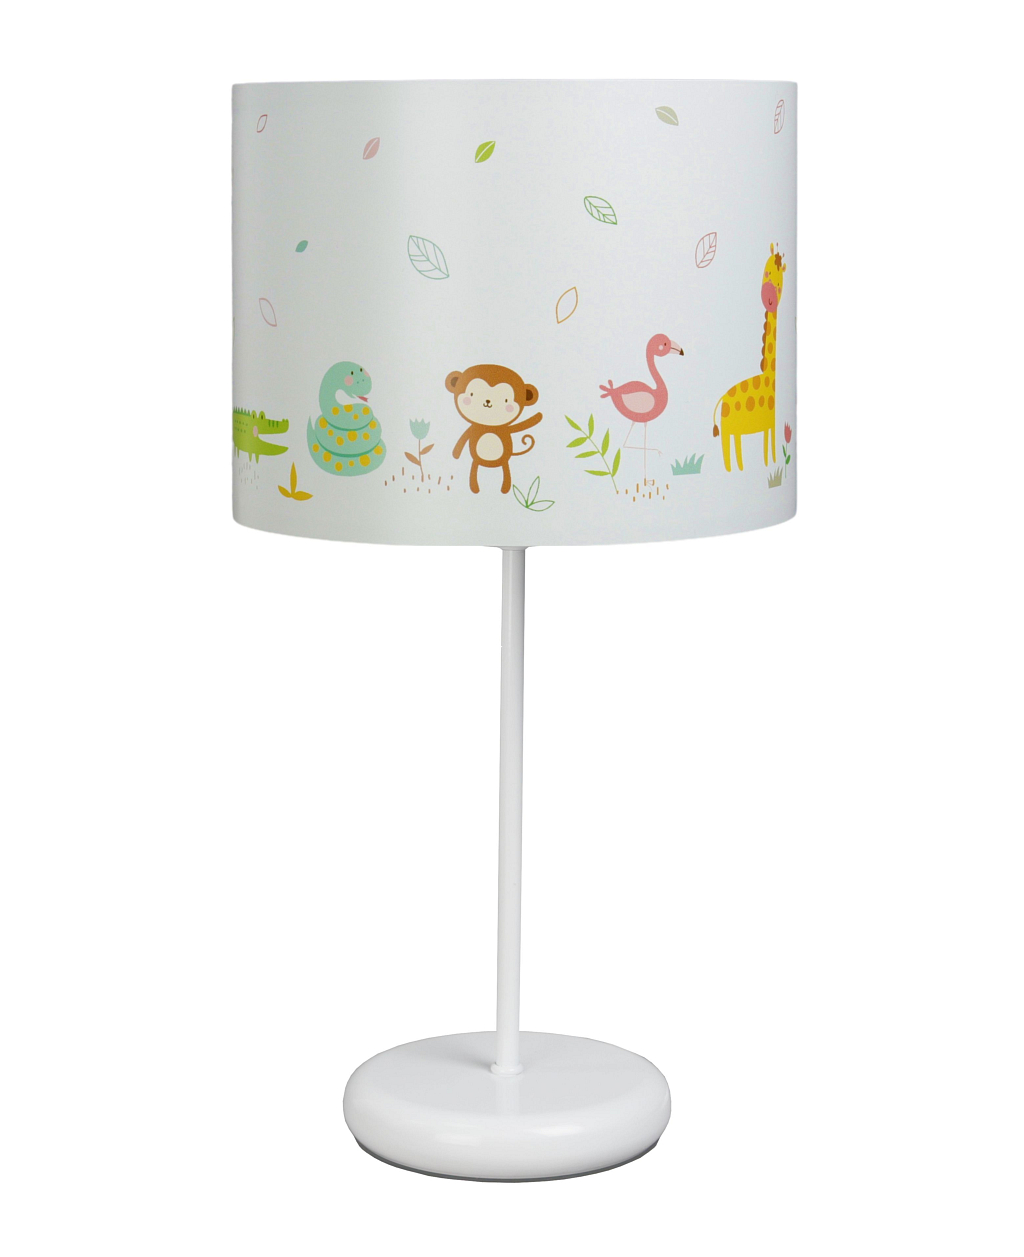 Biała lampka nocna na stolik do pokoju dziecka. Lampa nocna z kolorowym wzorem. Zwierzątka.